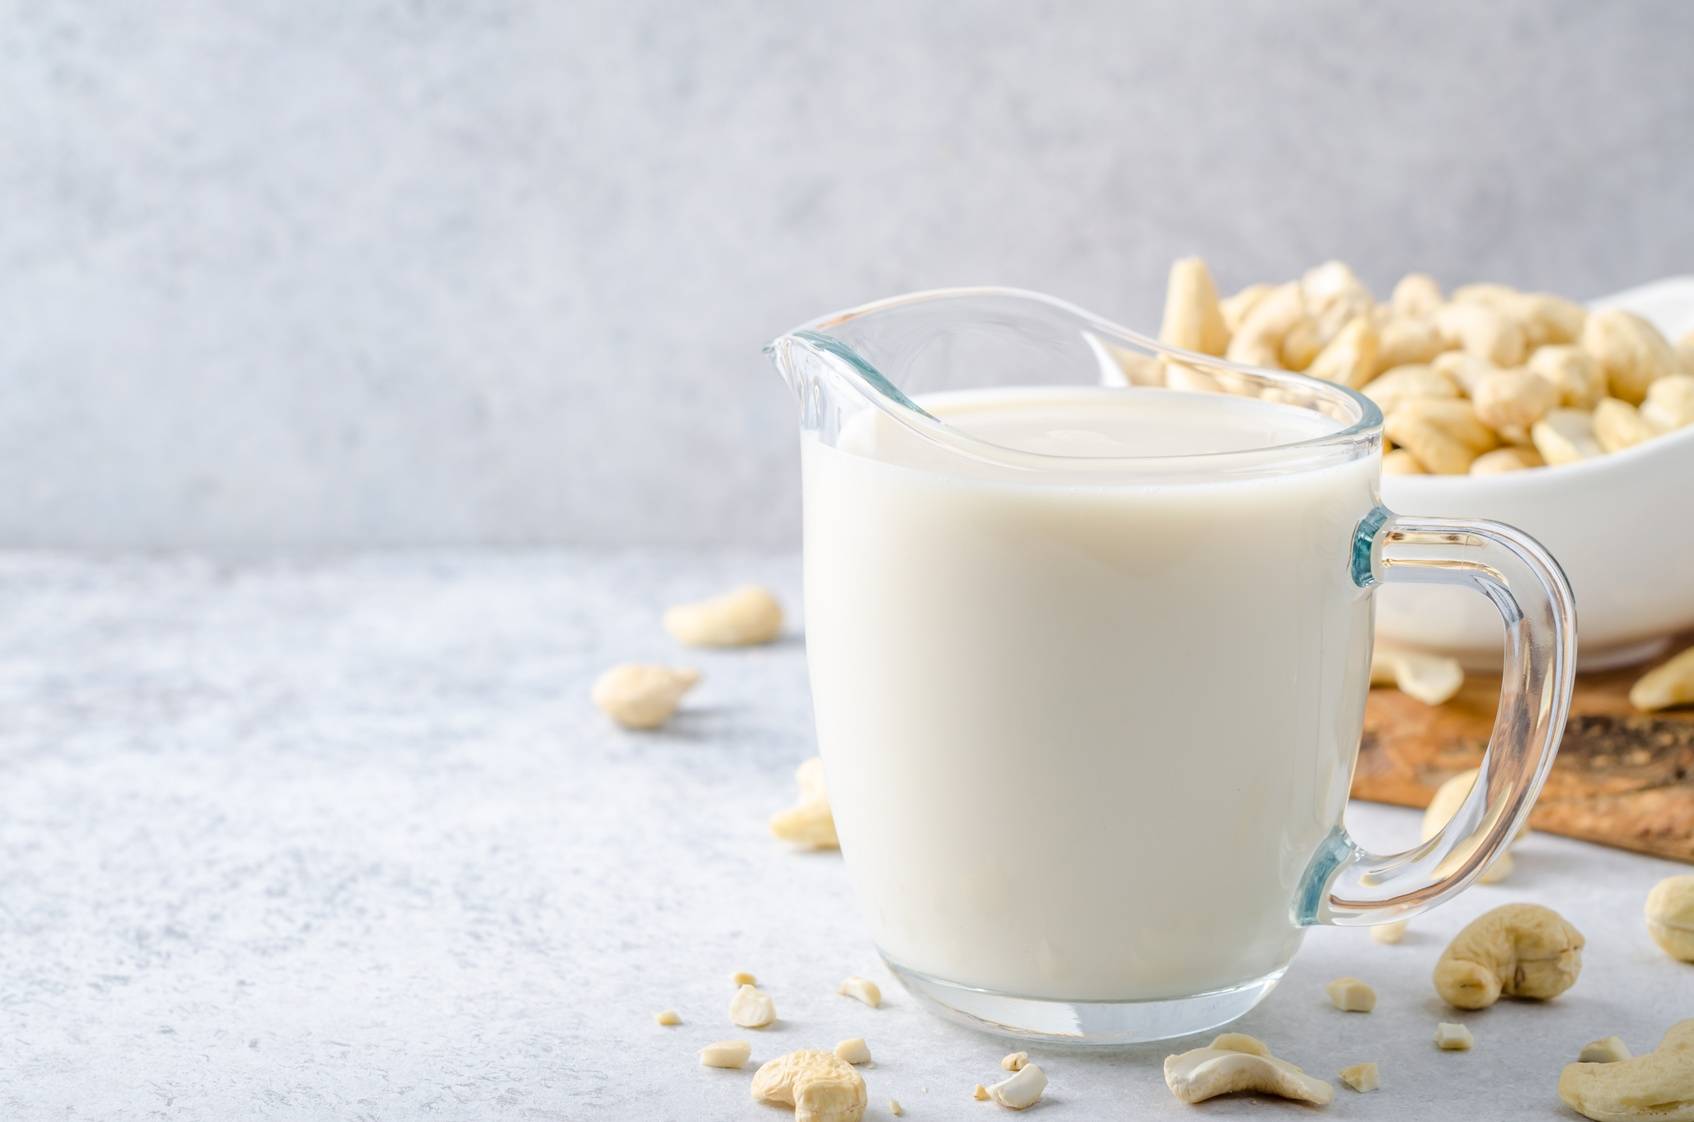 Mleko z orzechów nerkowca - mleko roślinne dla wegan i osób z nietolerancją laktozy.